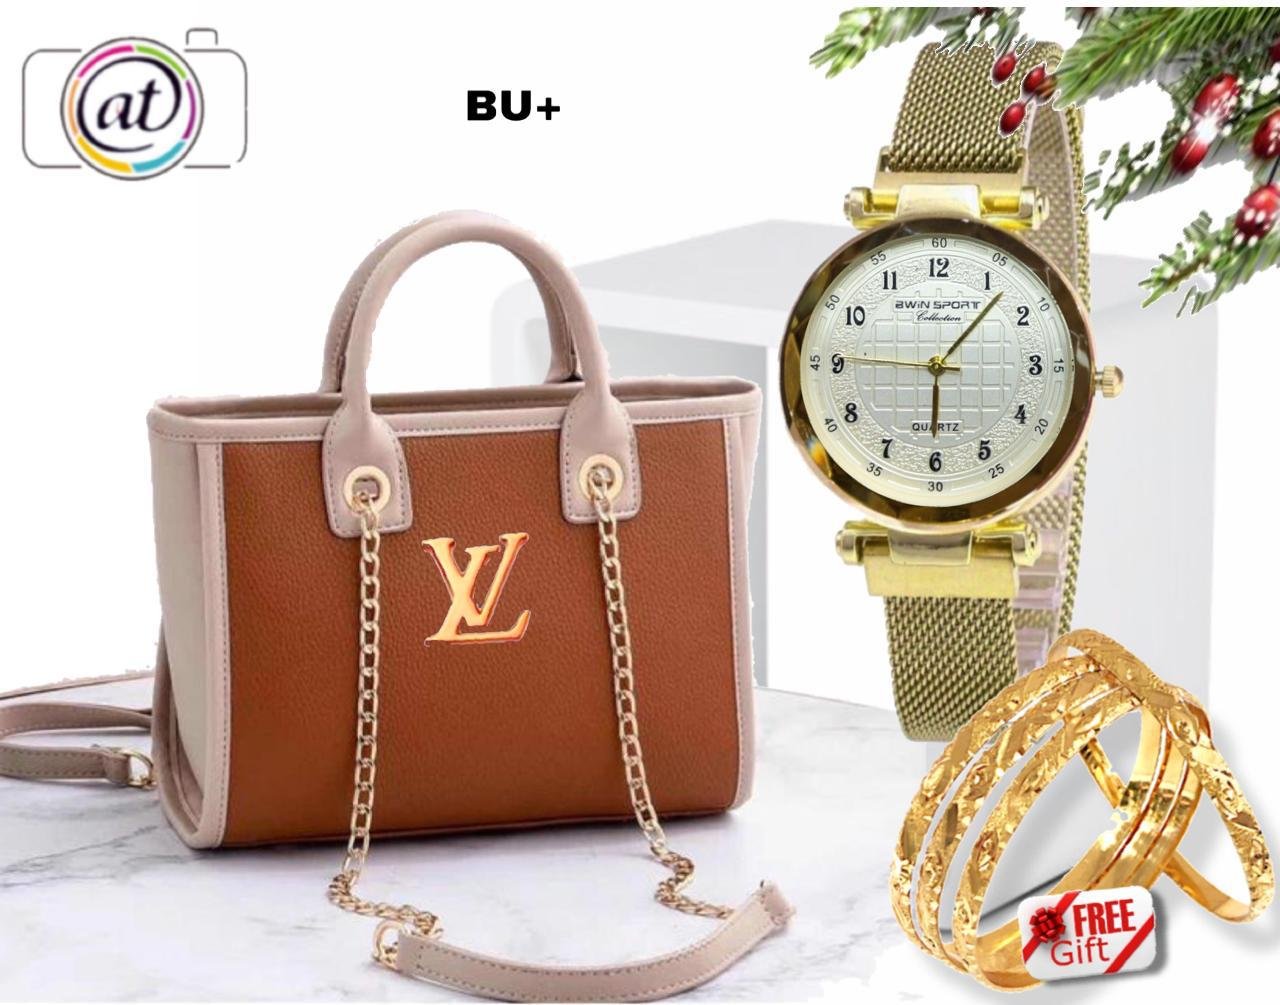 12 kd only Lv Bag 💼* - Amore Bazaar Kuwait Online Shop